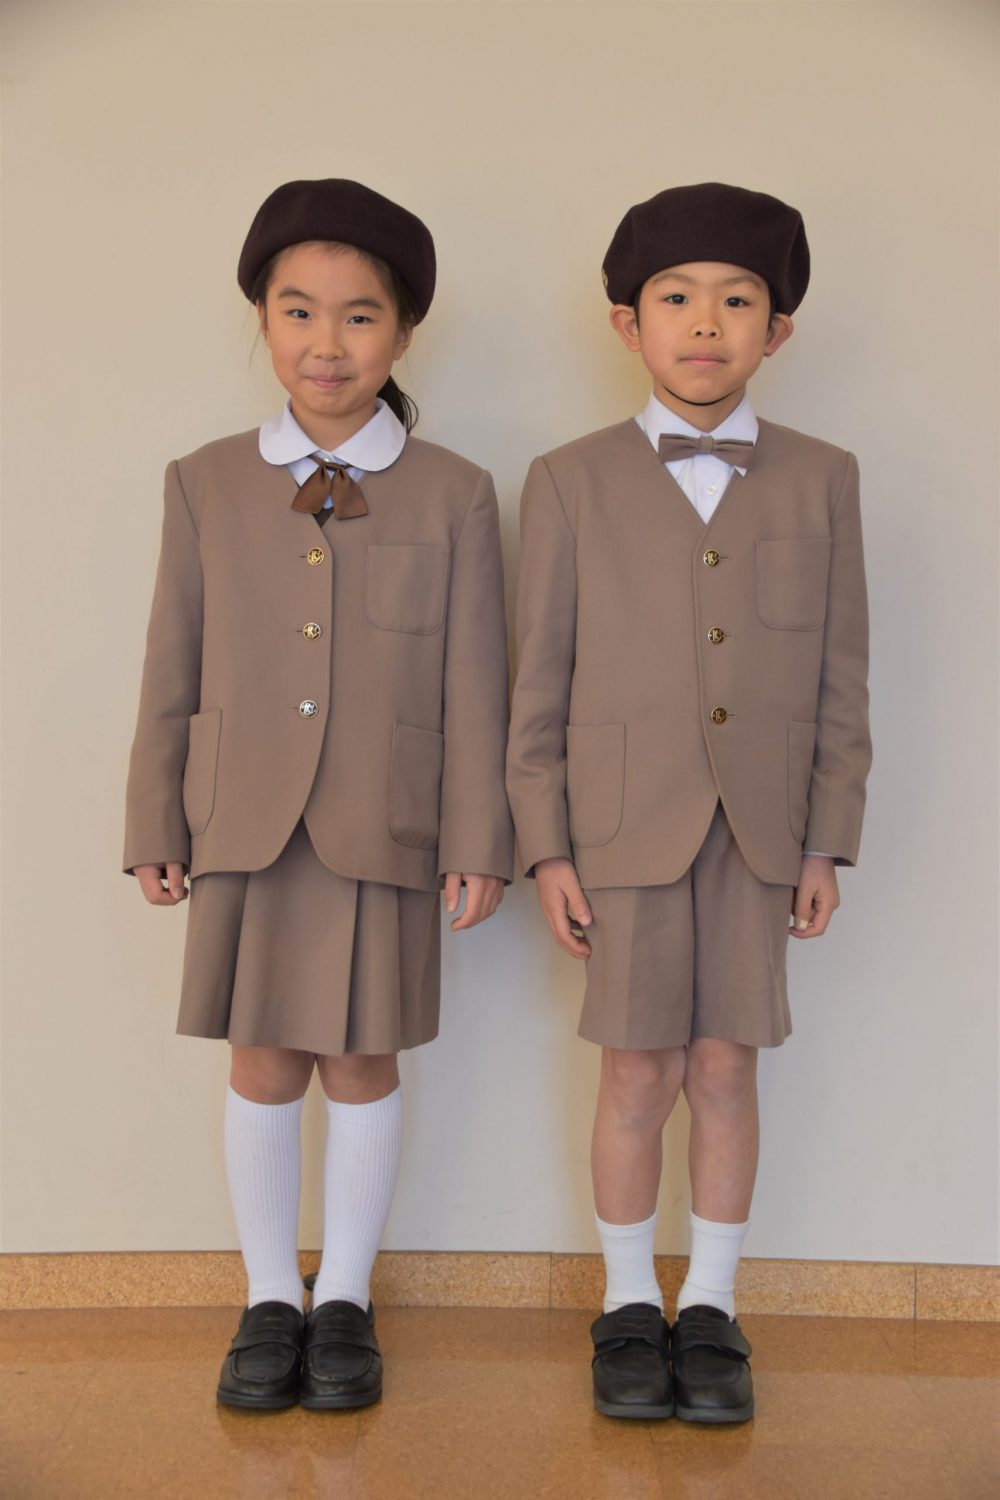 購入日本浦和ルーテル学院小学校 指定ランドセル 学生服